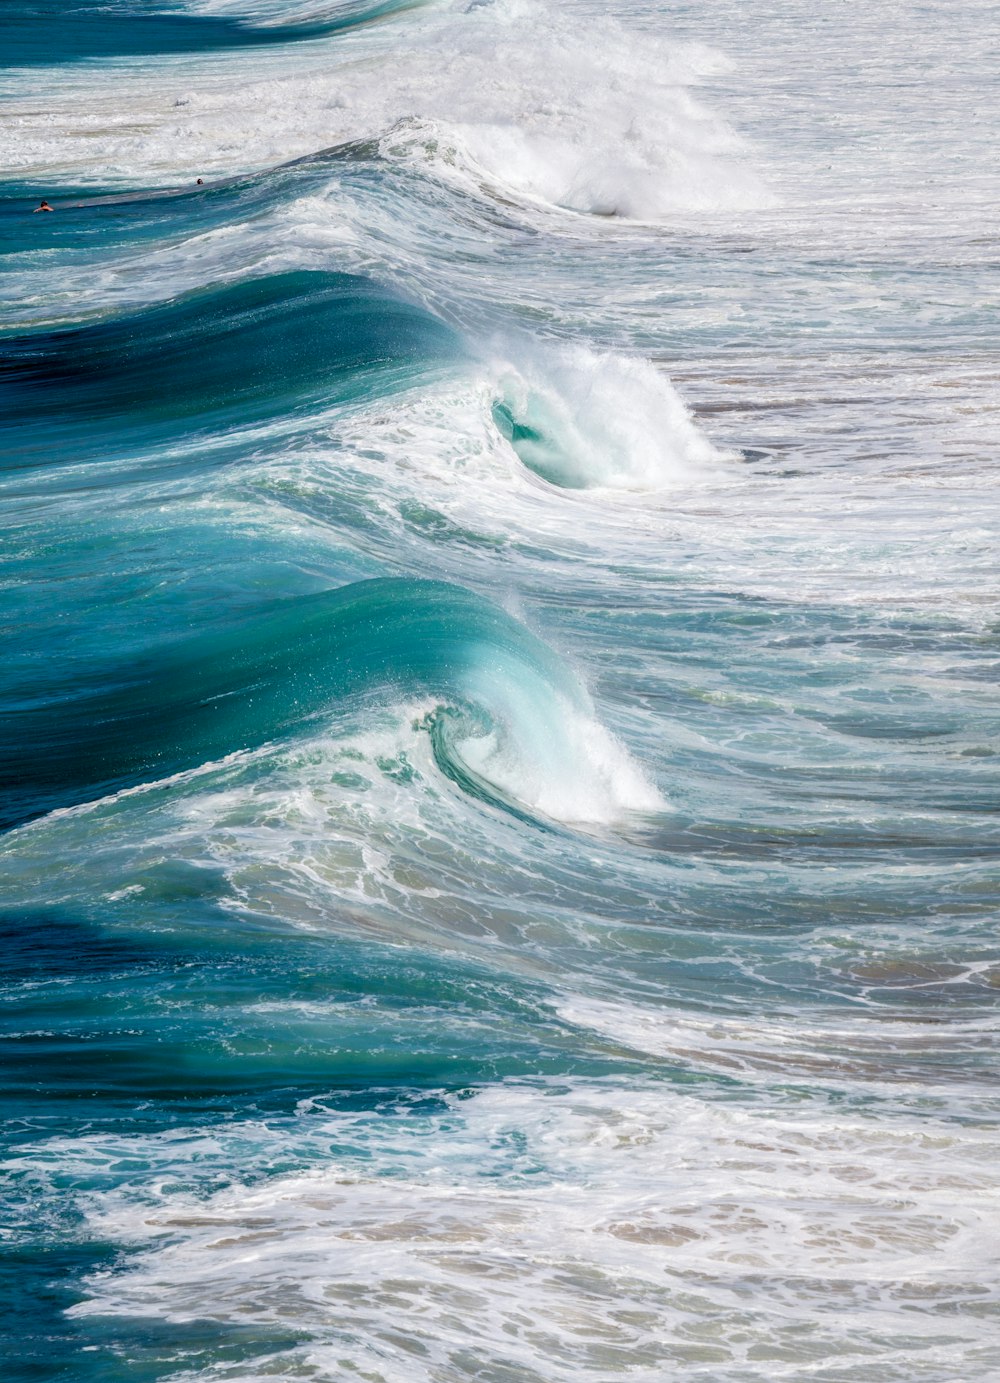 ondas do oceano batendo em terra durante o dia